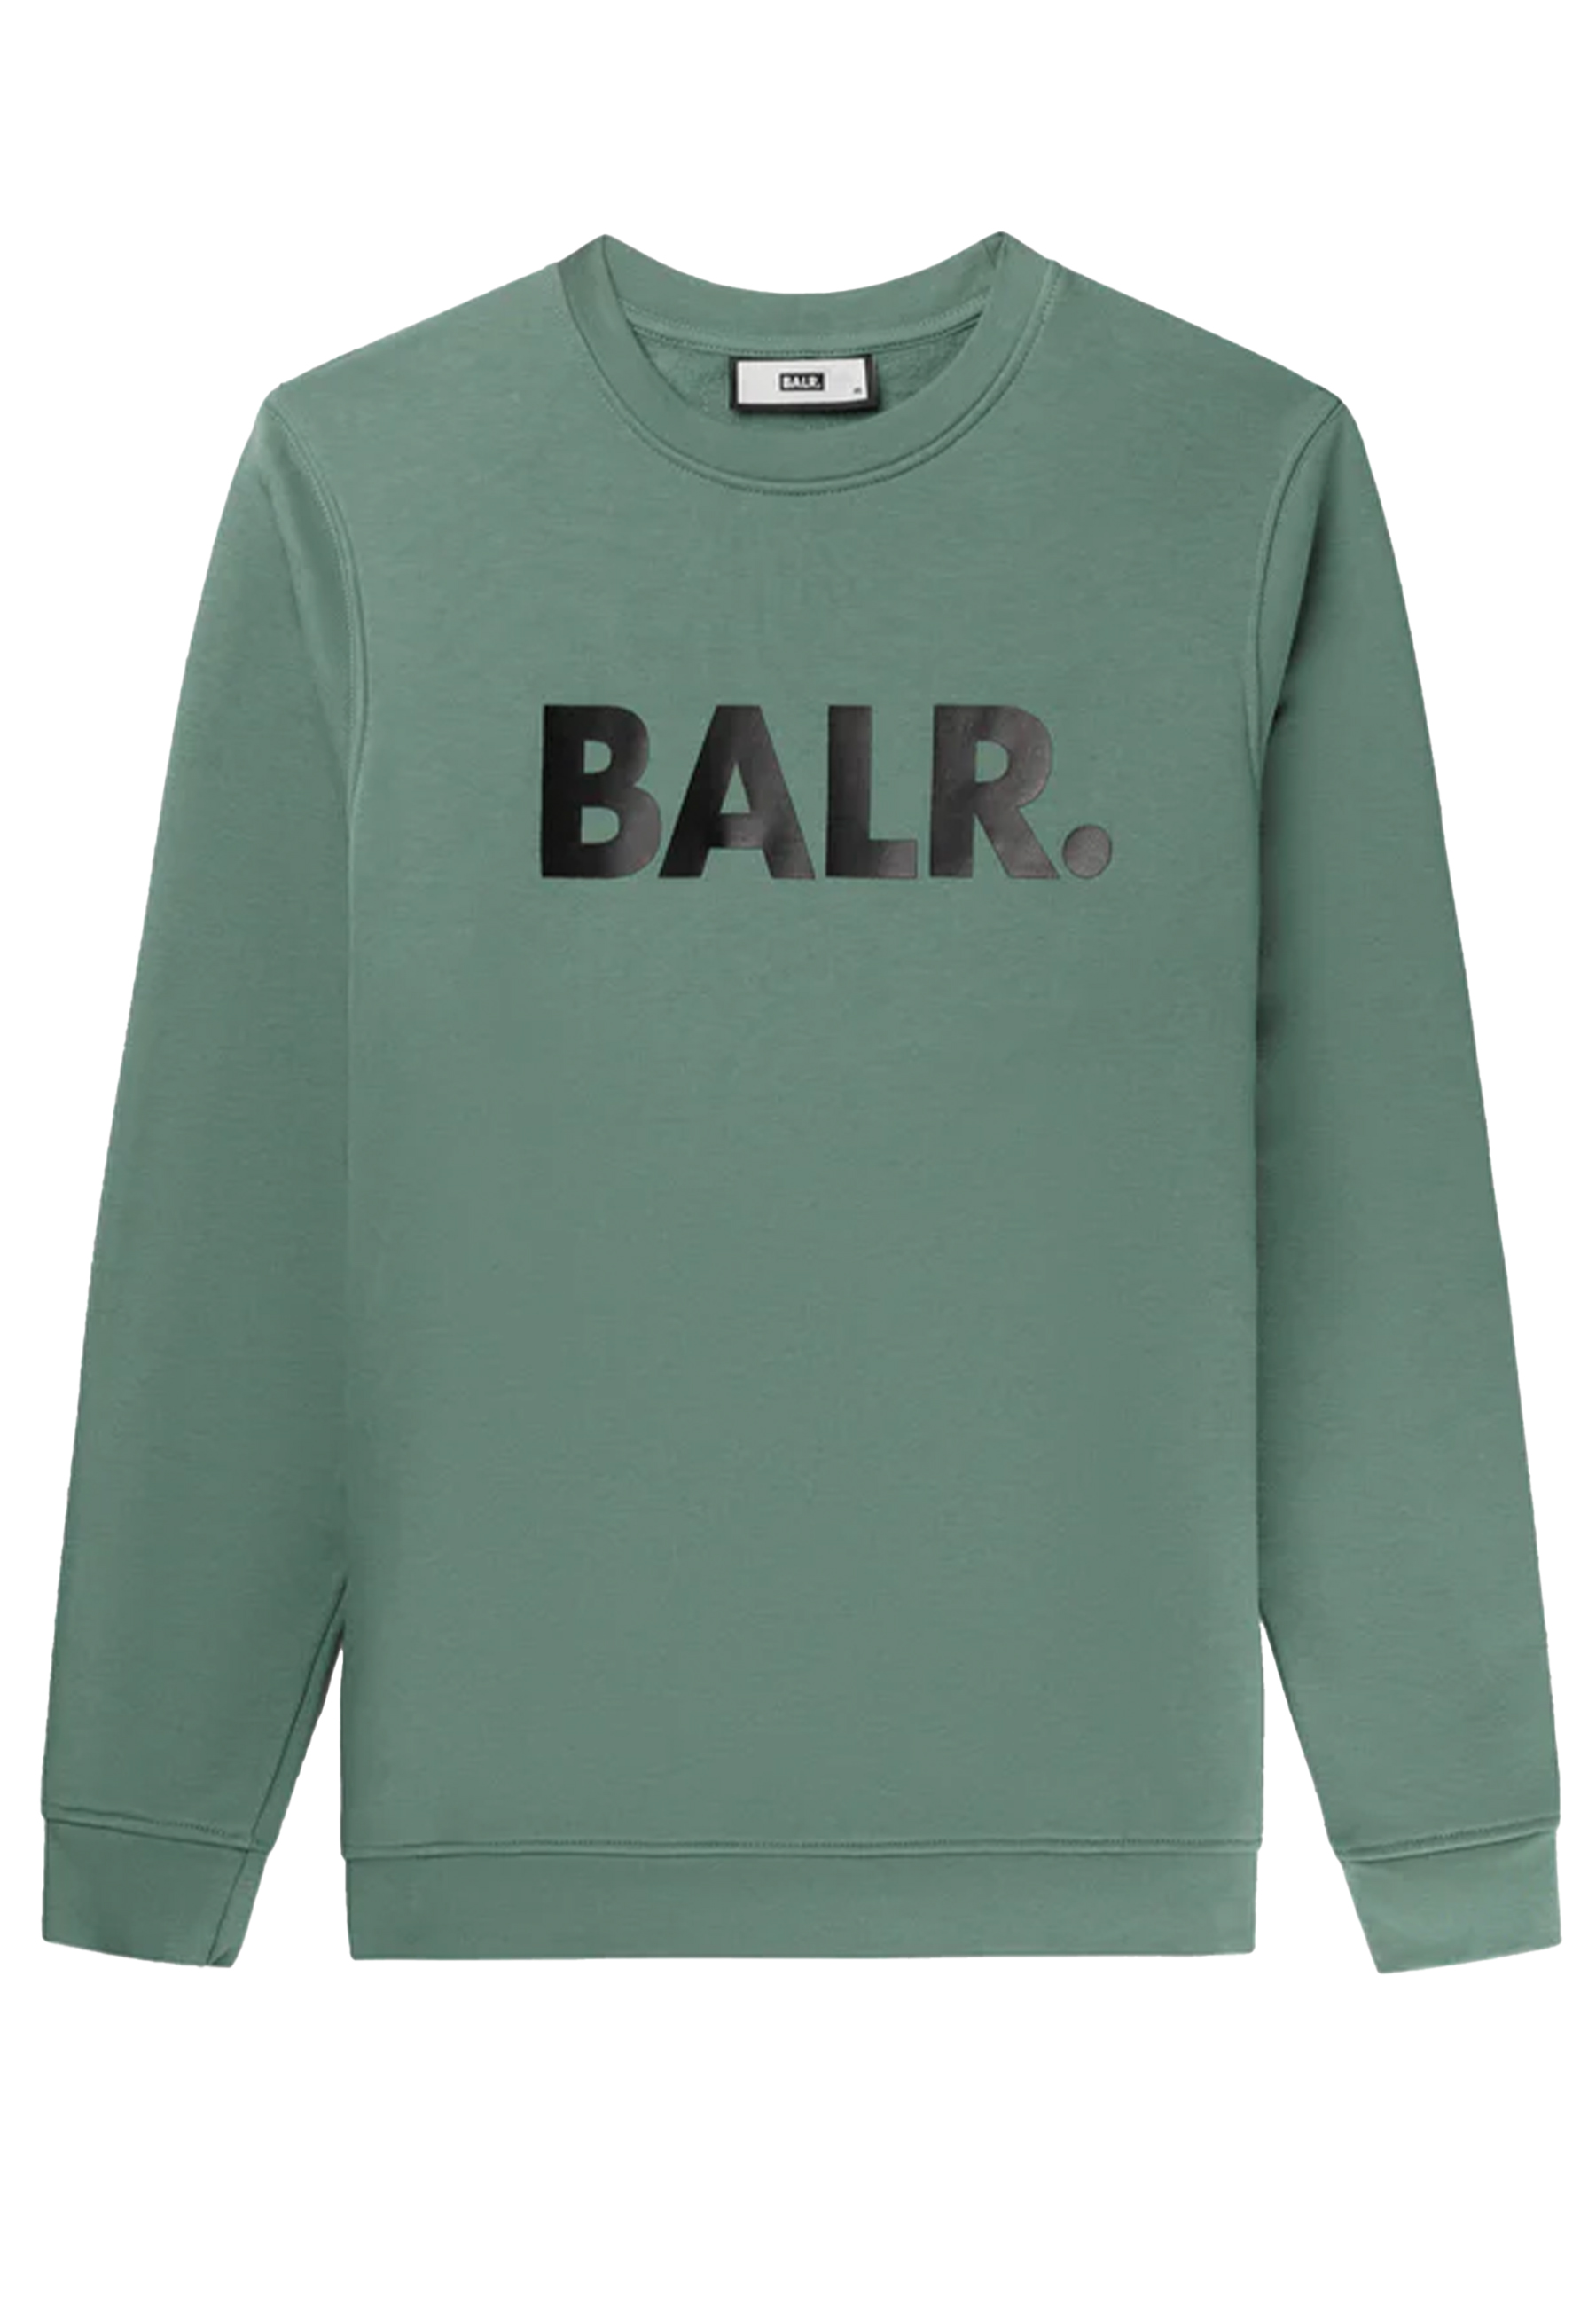 BALR. sweaters groen Heren maat L